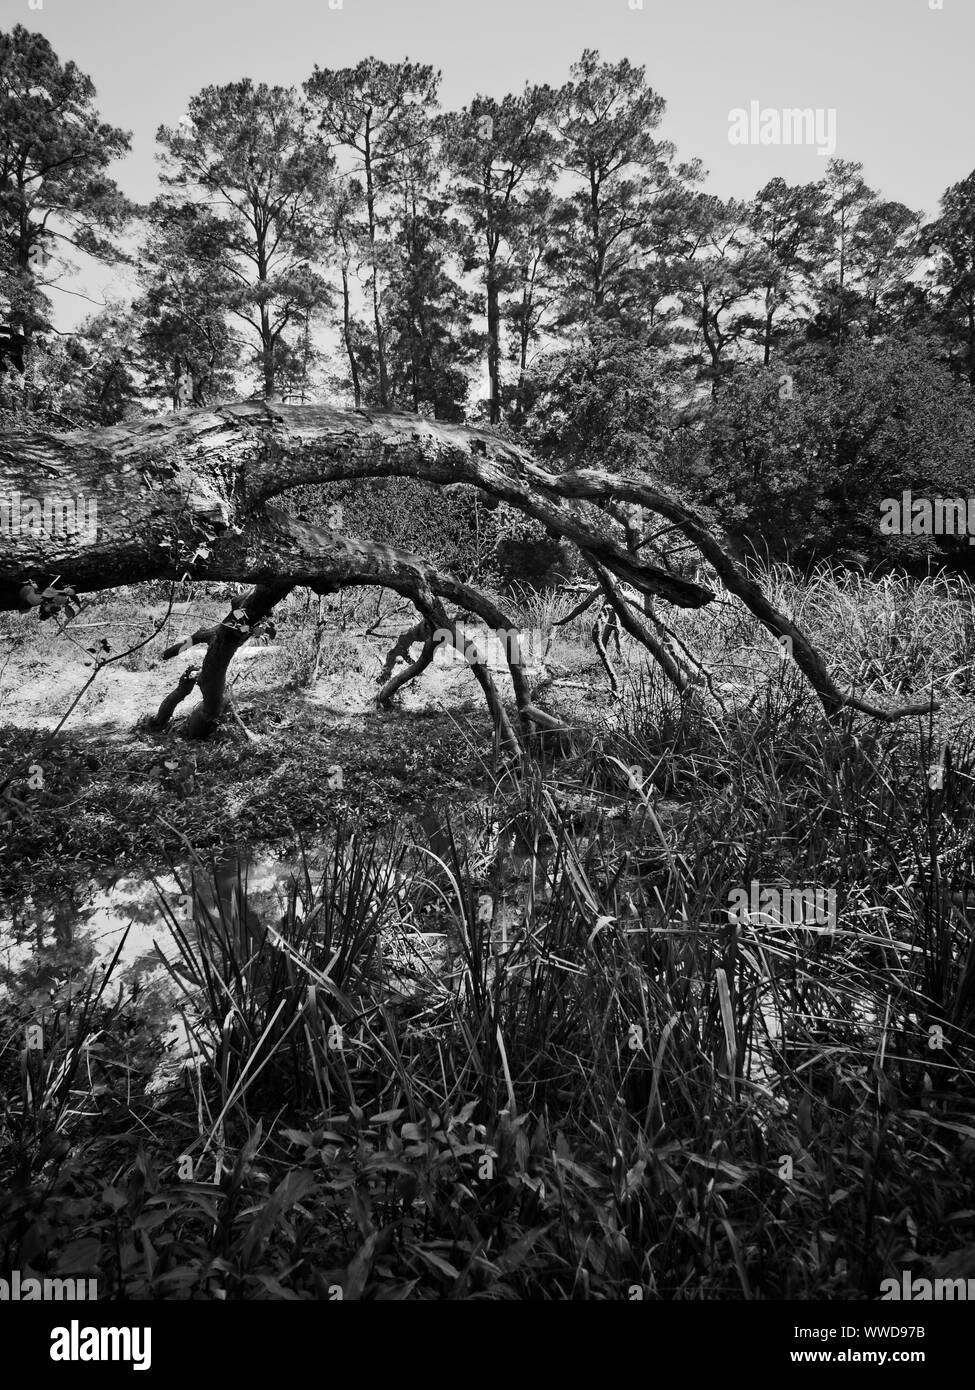 Il Woodlands TX USA - 03-26-2019 - caduto albero morto nella palude Foto Stock